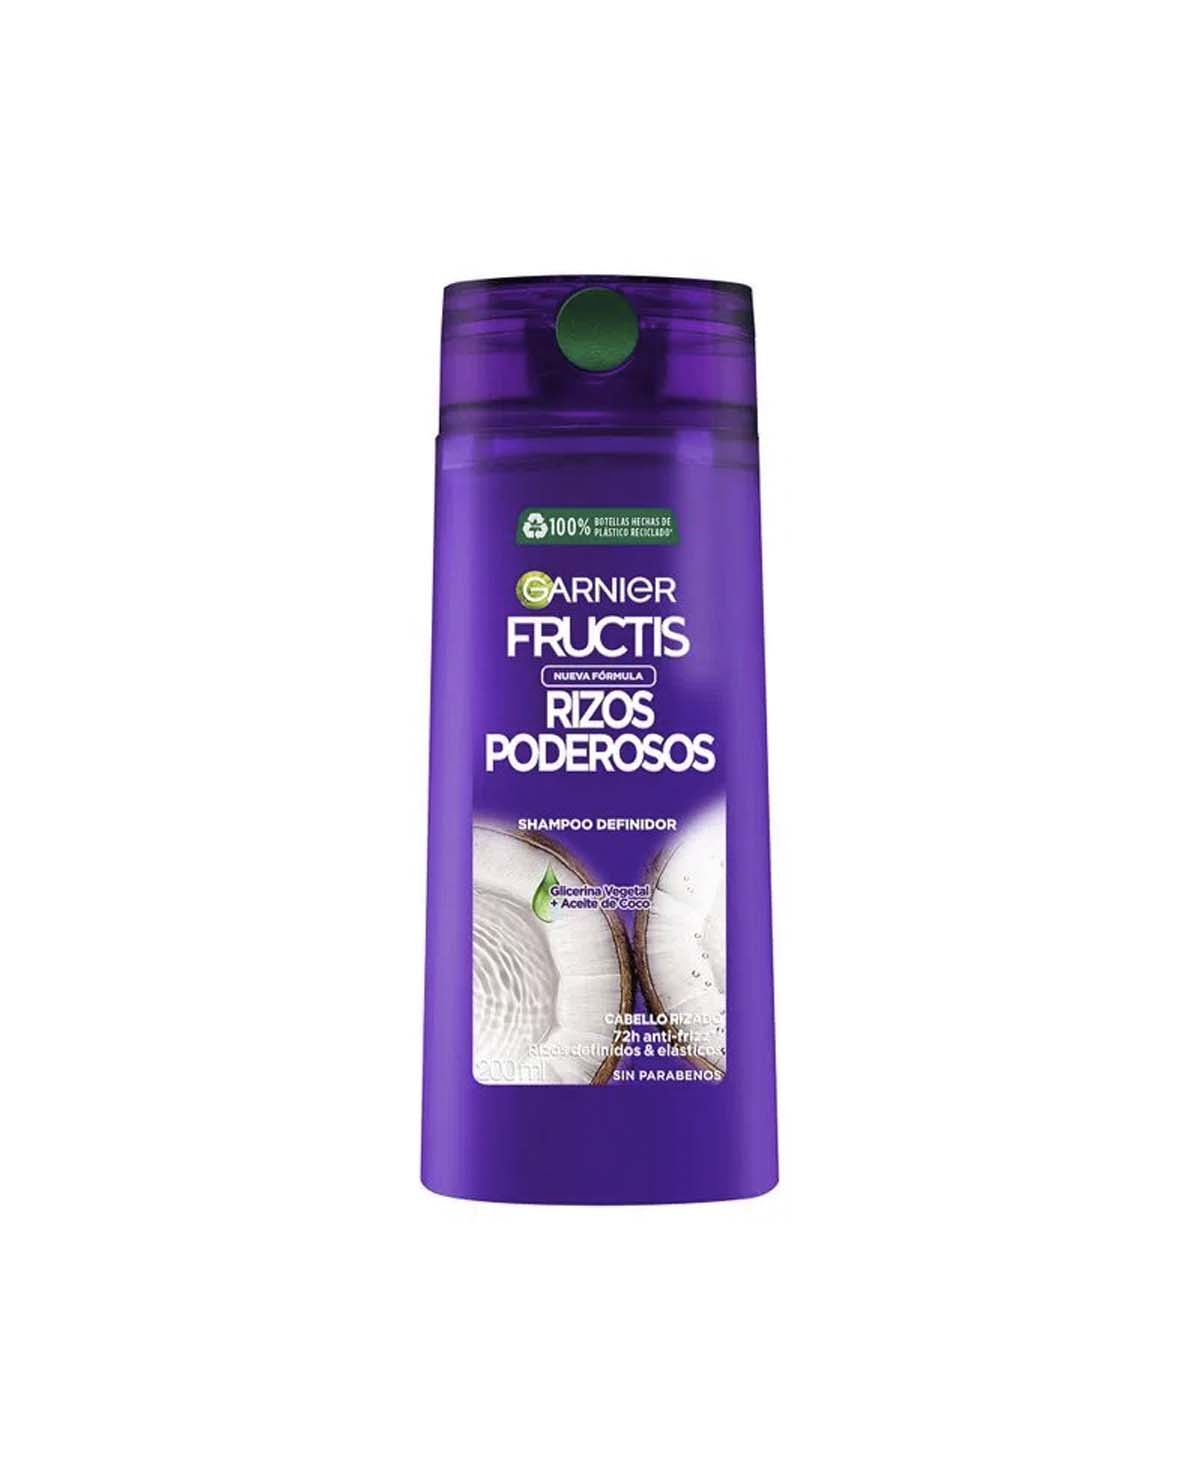 Shampoo Fructis Rizos 200 Ml